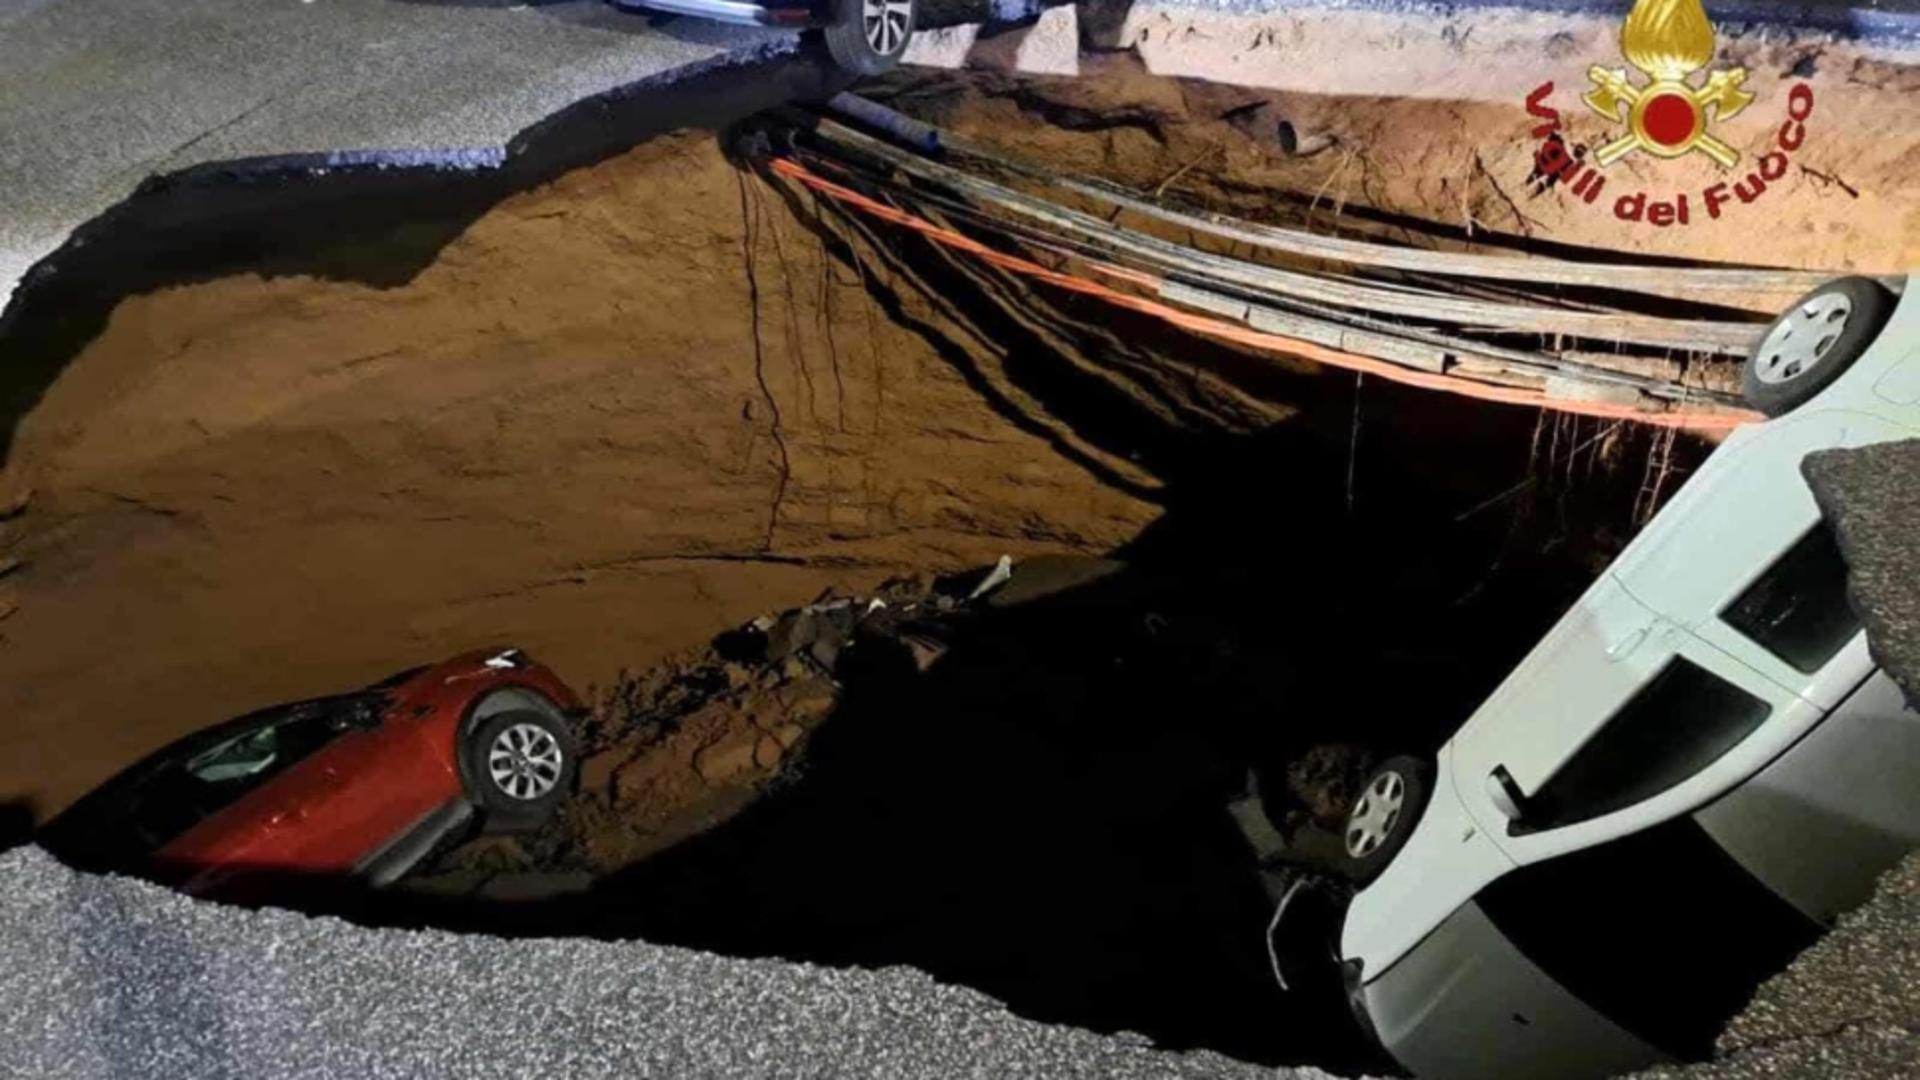 Alertă în Italia: Un drum din Roma s-a prăbușit brusc, formând un adevărat crater. Două mașini au fost înghițite de groapa imensă